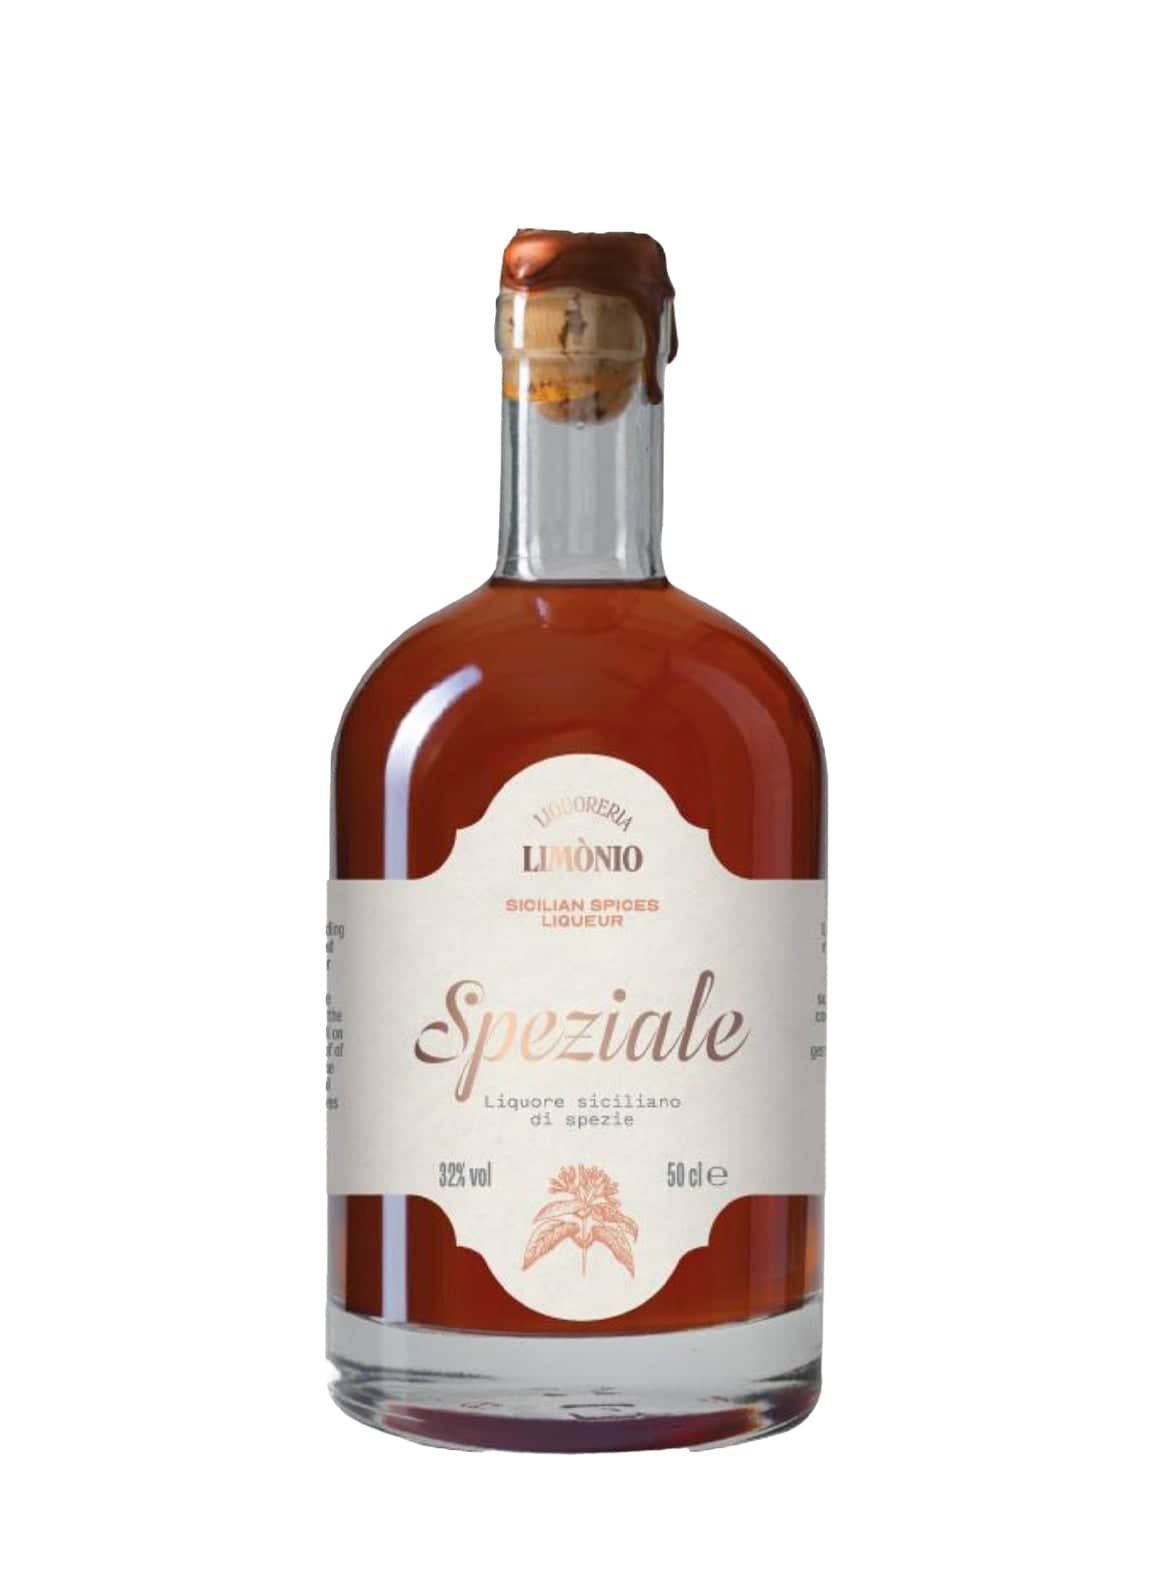 Limonio Speziale spices liqueur 32% 500ml | Liqueurs | Shop online at Spirits of France